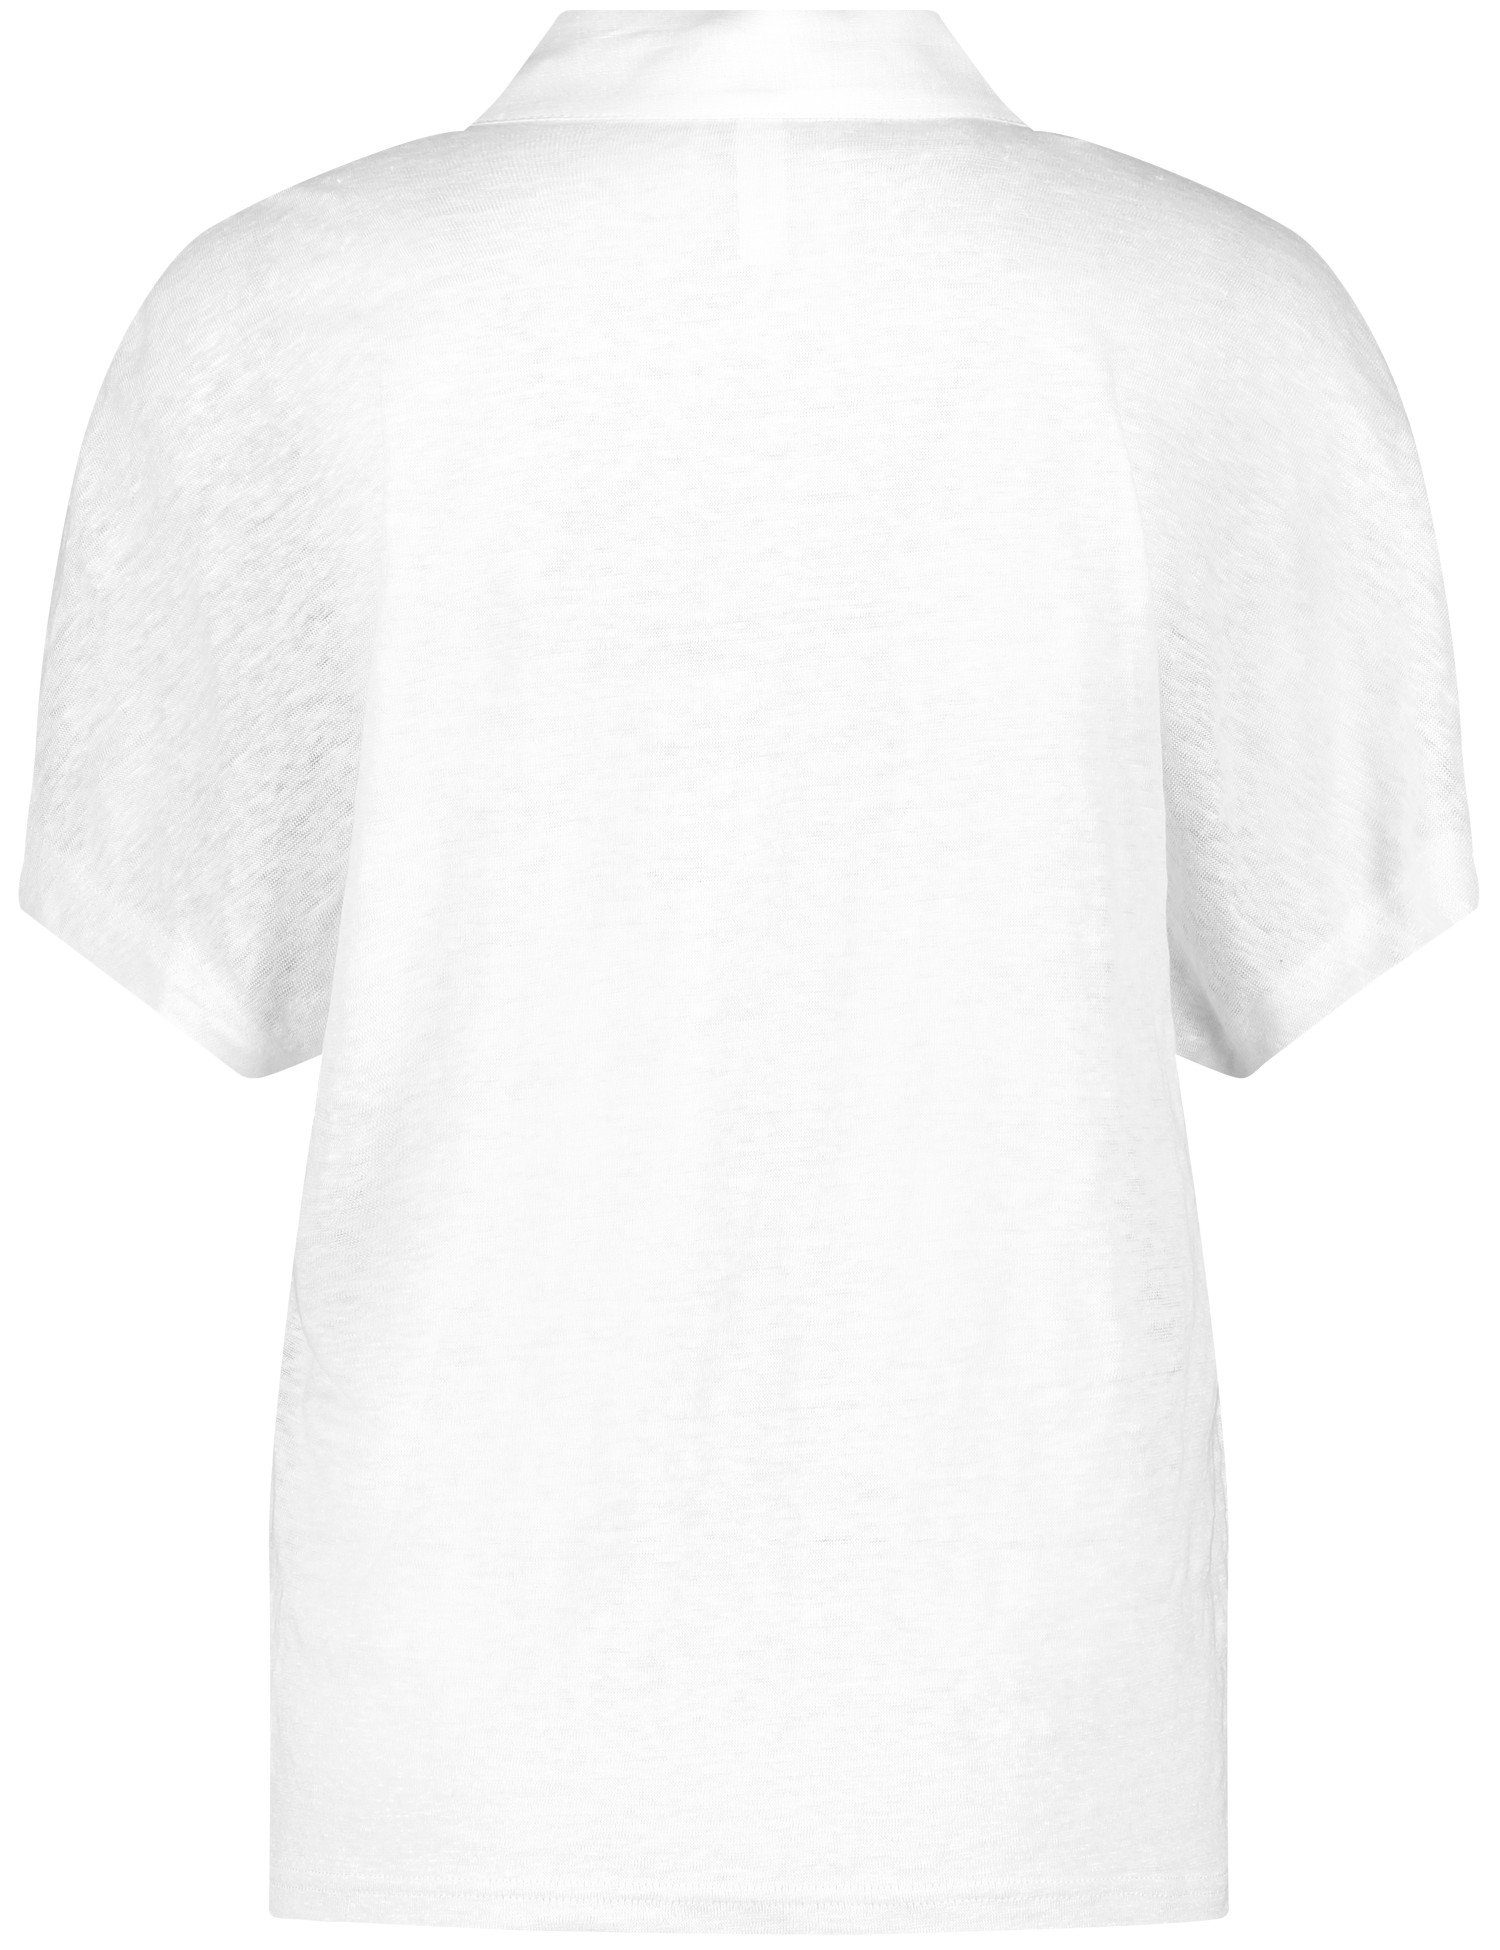 GERRY WEBER Kurzarmshirt Blusenshirt aus Leinen weiß/weiß